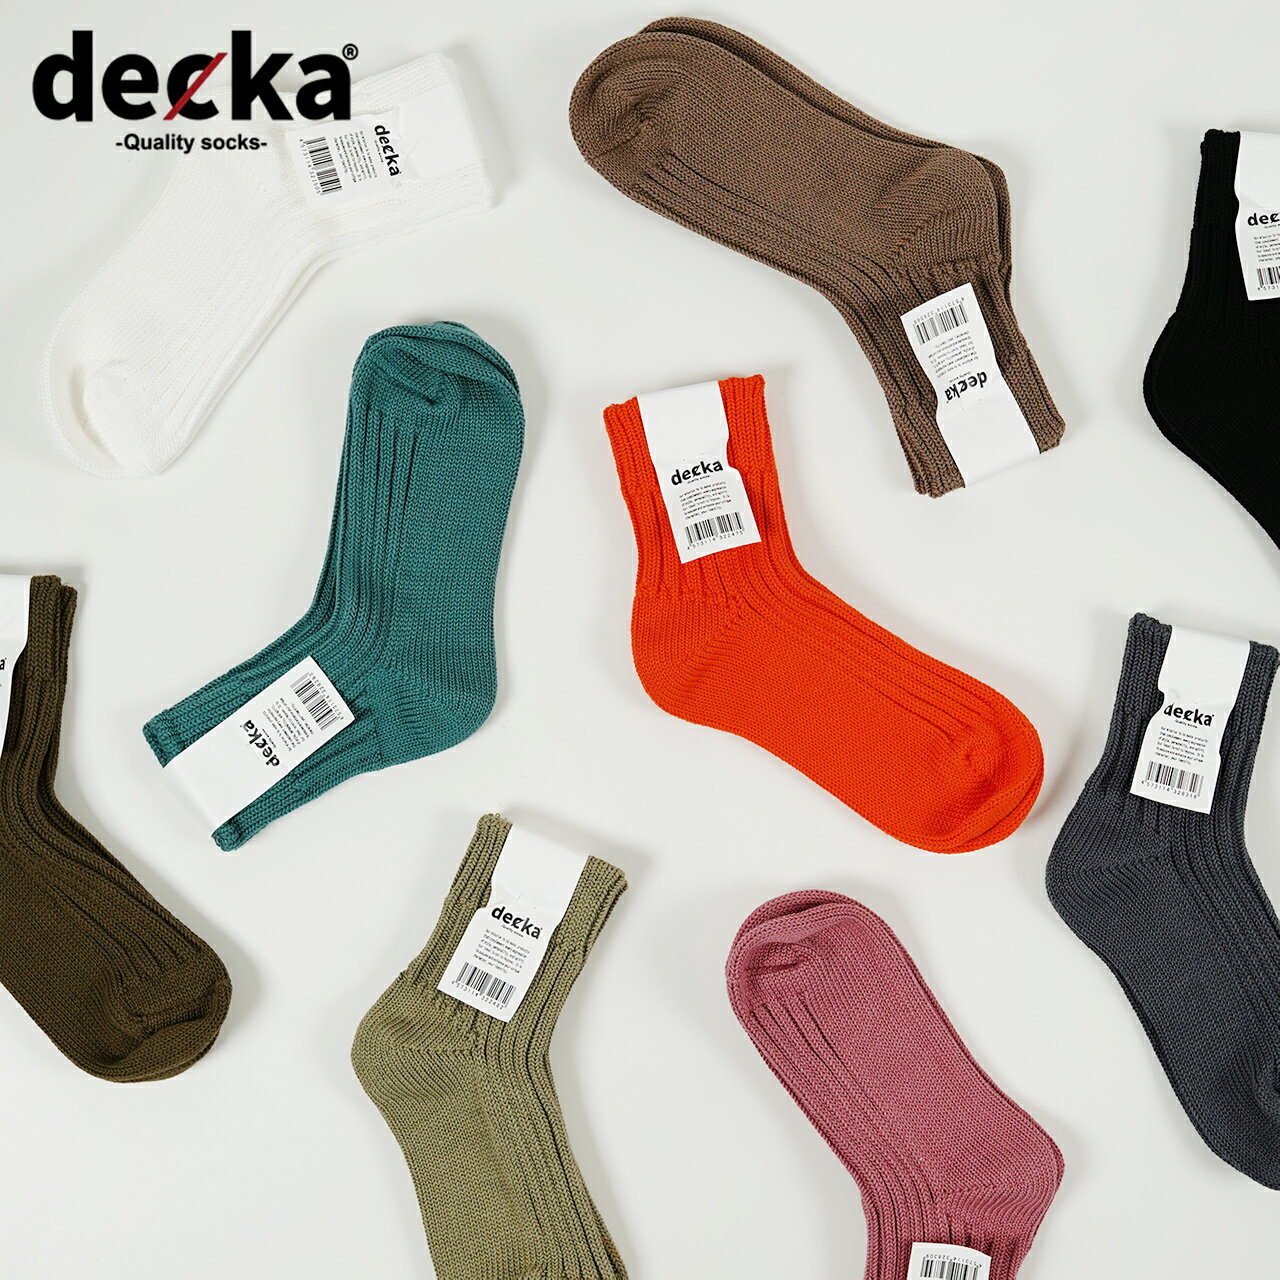 デカクオリティソックス decka Quality socks ローゲージ リブソックス ショートレングス Low Gauge Rib Socks Short Length 靴下 レディース メンズ de-26 de-26-2